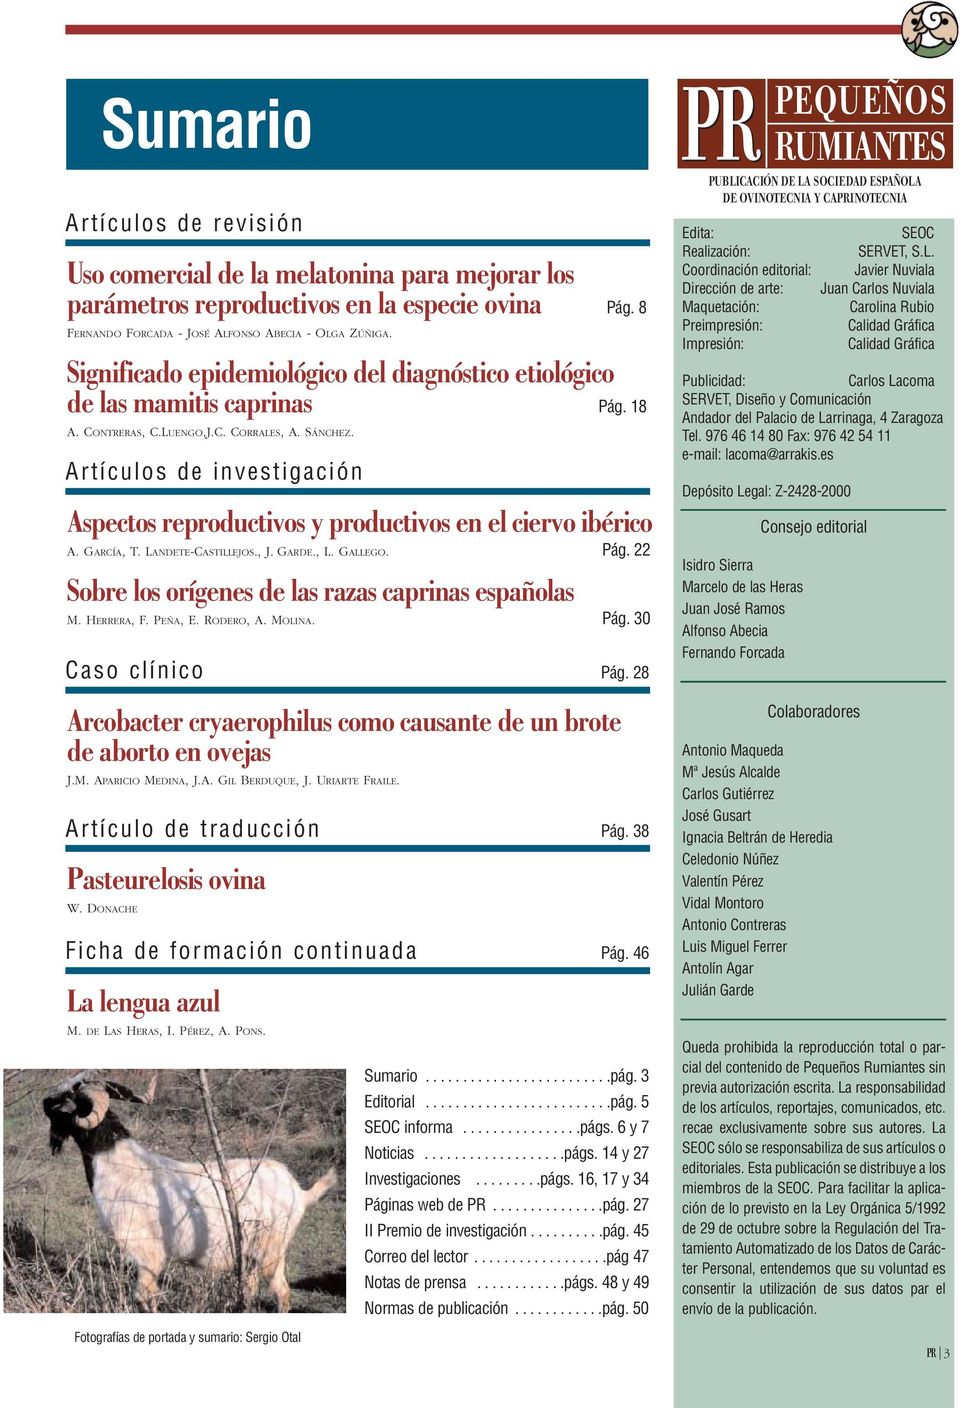 Artículos de investigación Aspectos reproductivos y productivos en el ciervo ibérico A. GARCÍA, T. LANDETE-CASTILLEJOS., J. GARDE., L. GALLEGO. Pág.